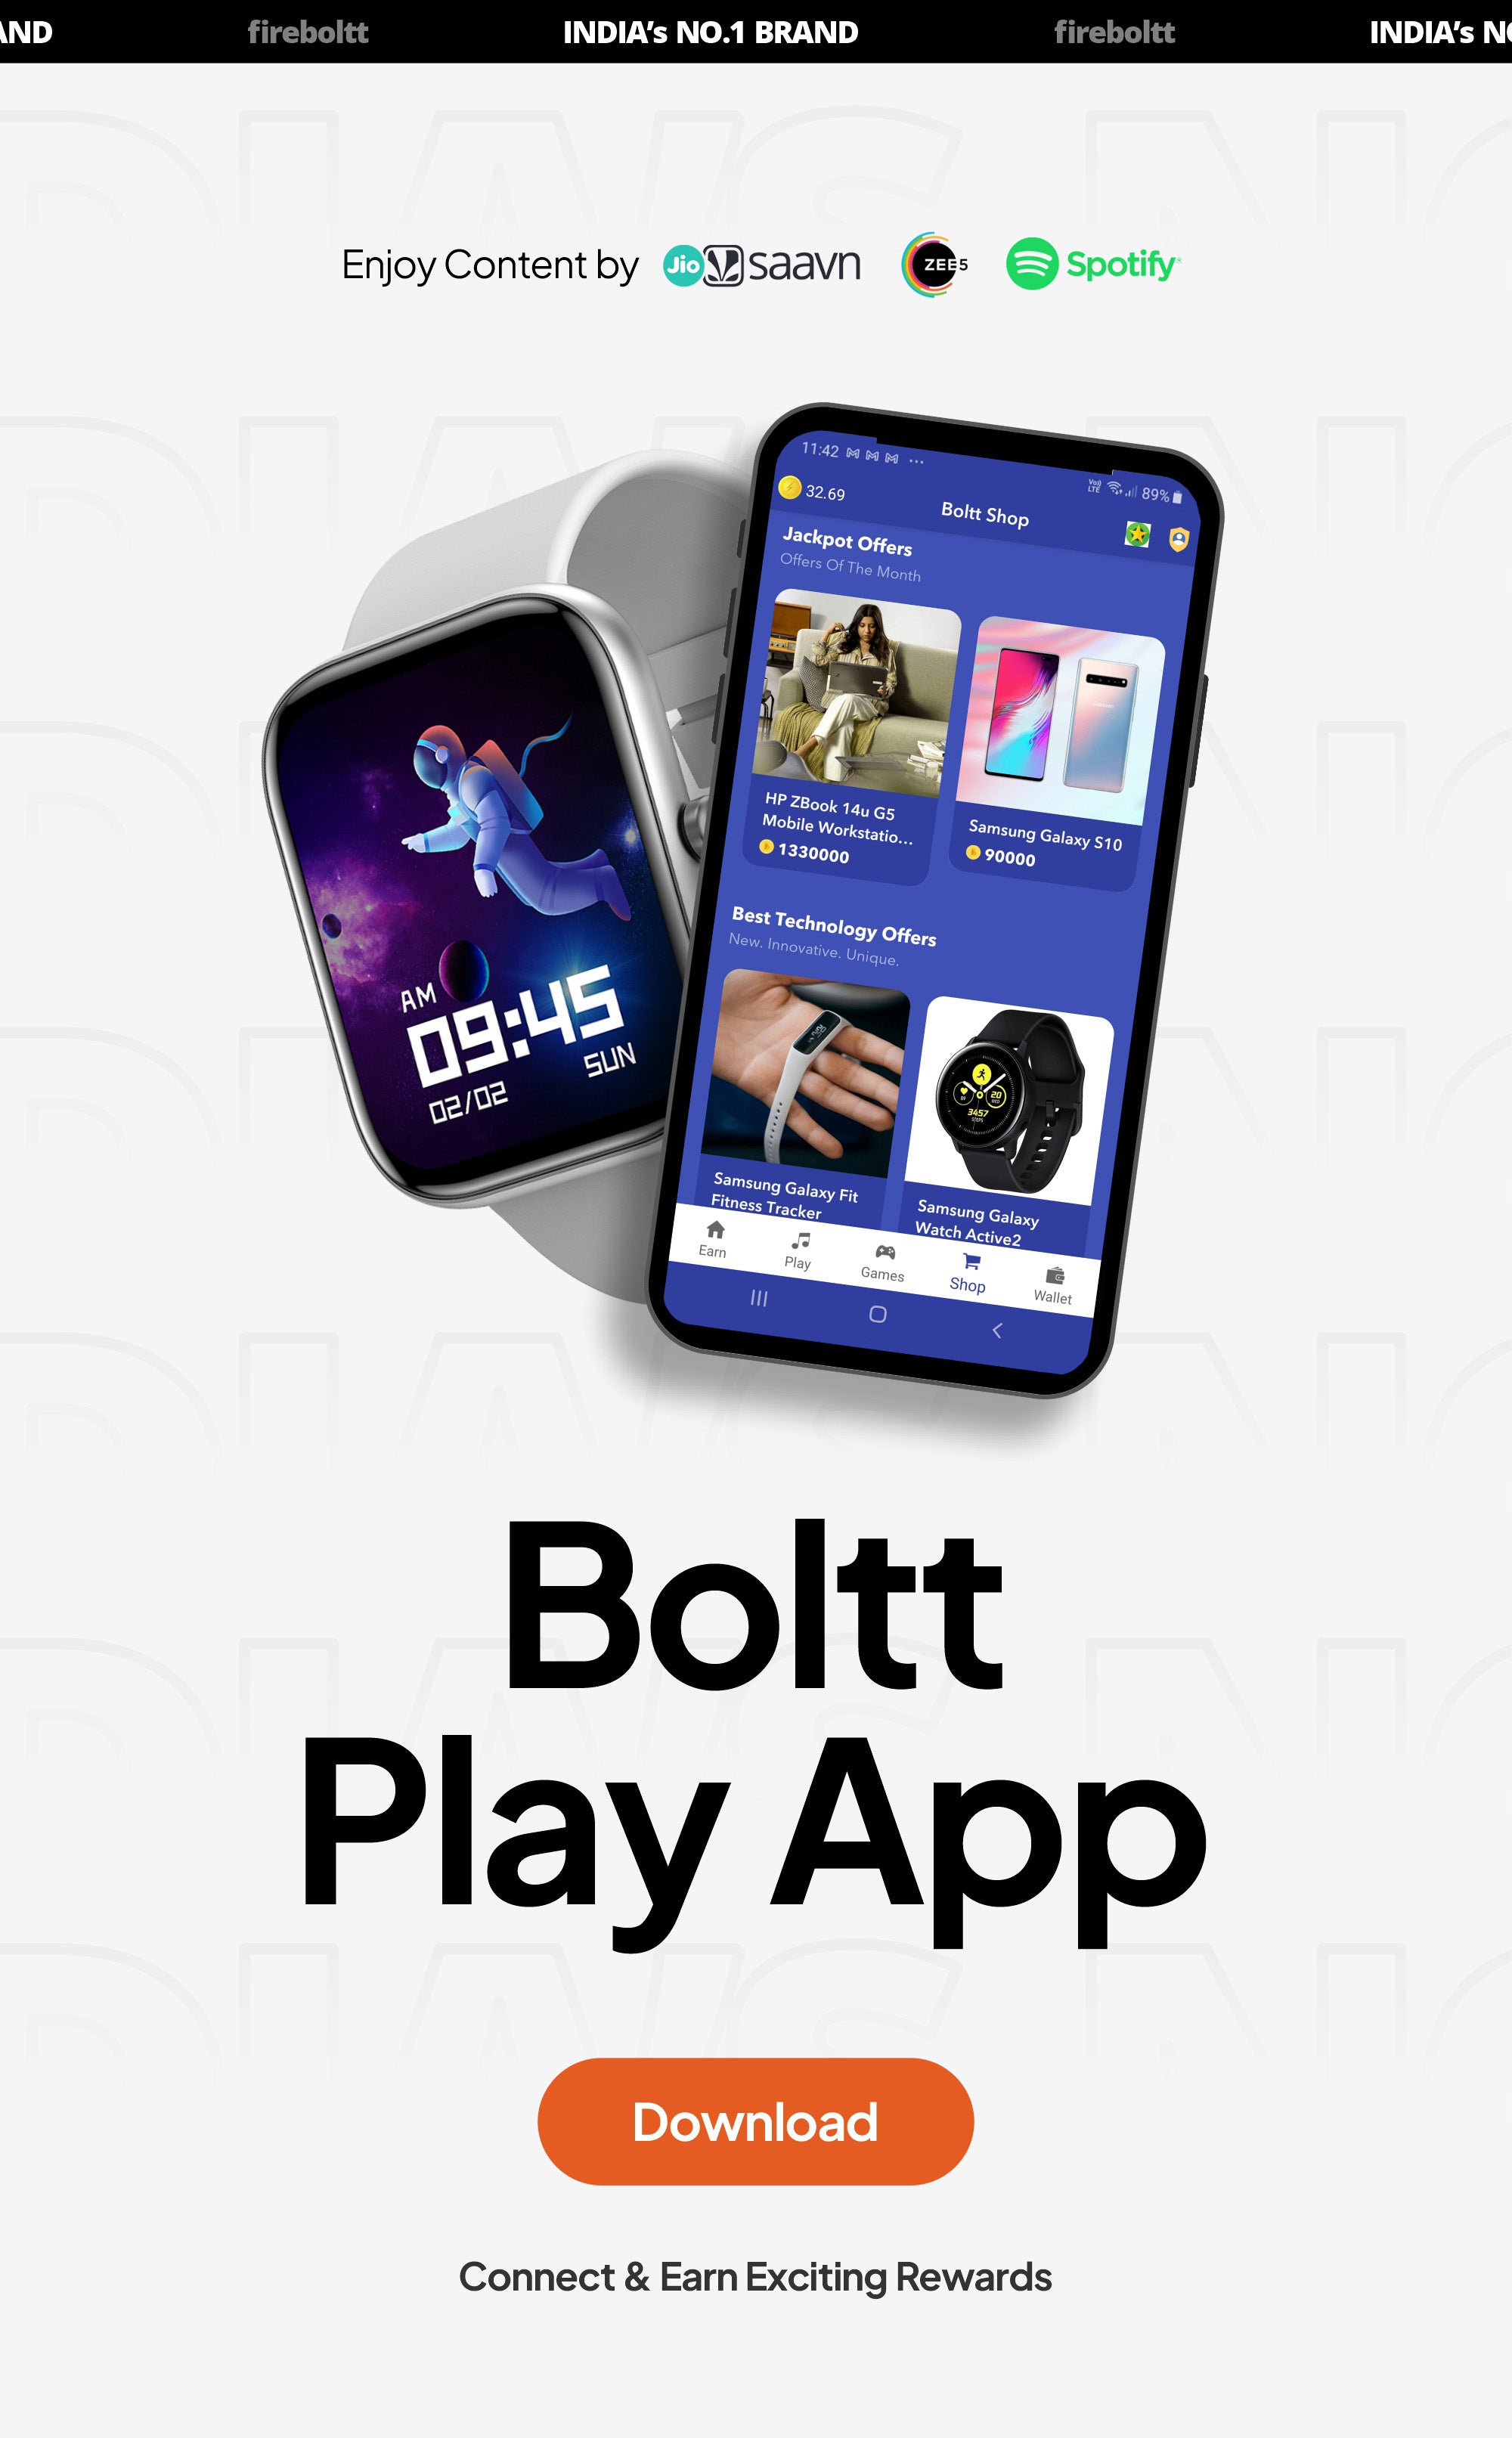 Boltt Play App